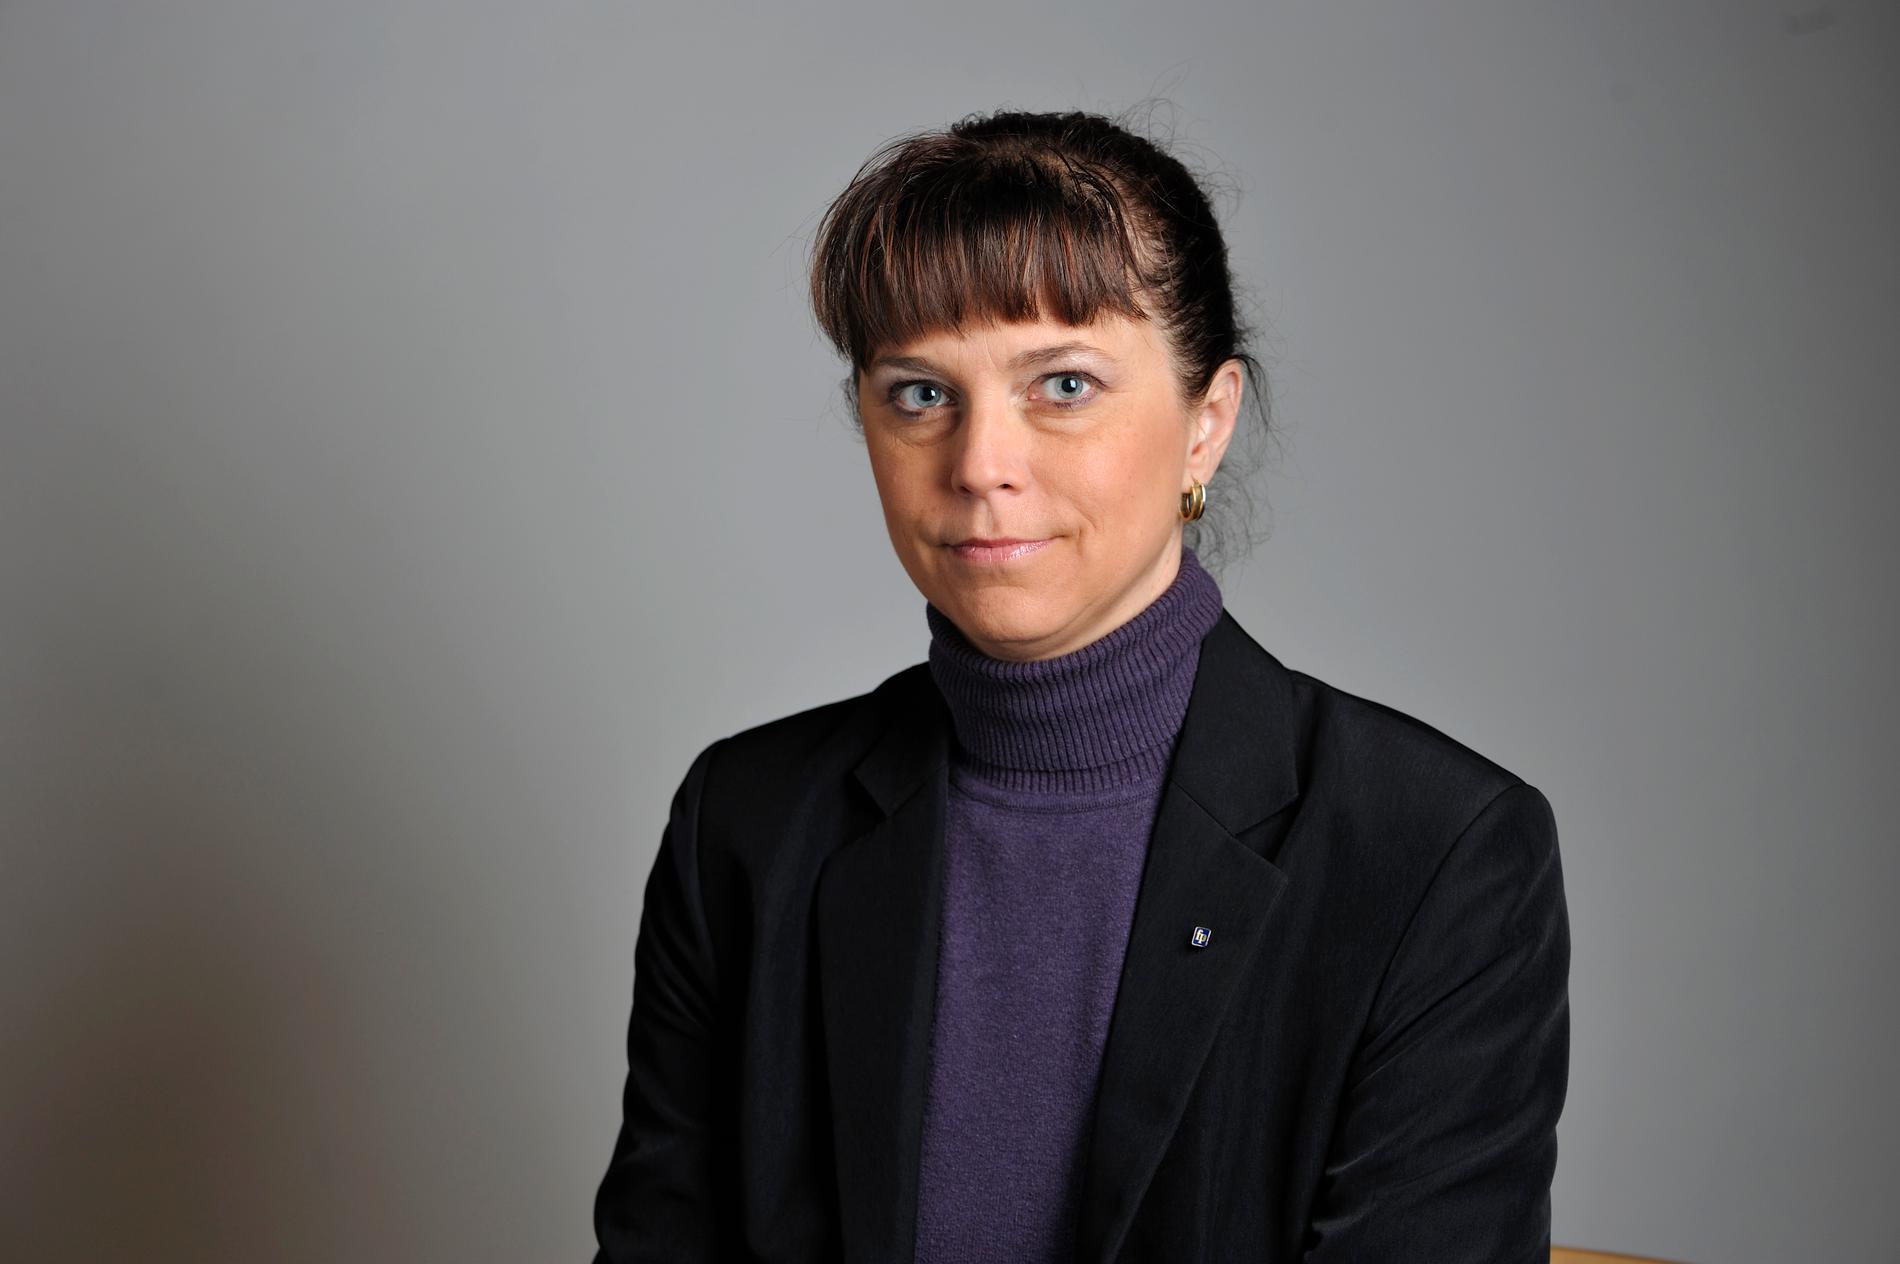  Riksdagsledamoten Emma Carlsson Löfdahl lämnade Liberalerna. Sedan dess har hon plockat ut 400 000 kronor i arvode – utan att hon arbetat i riksdagen.